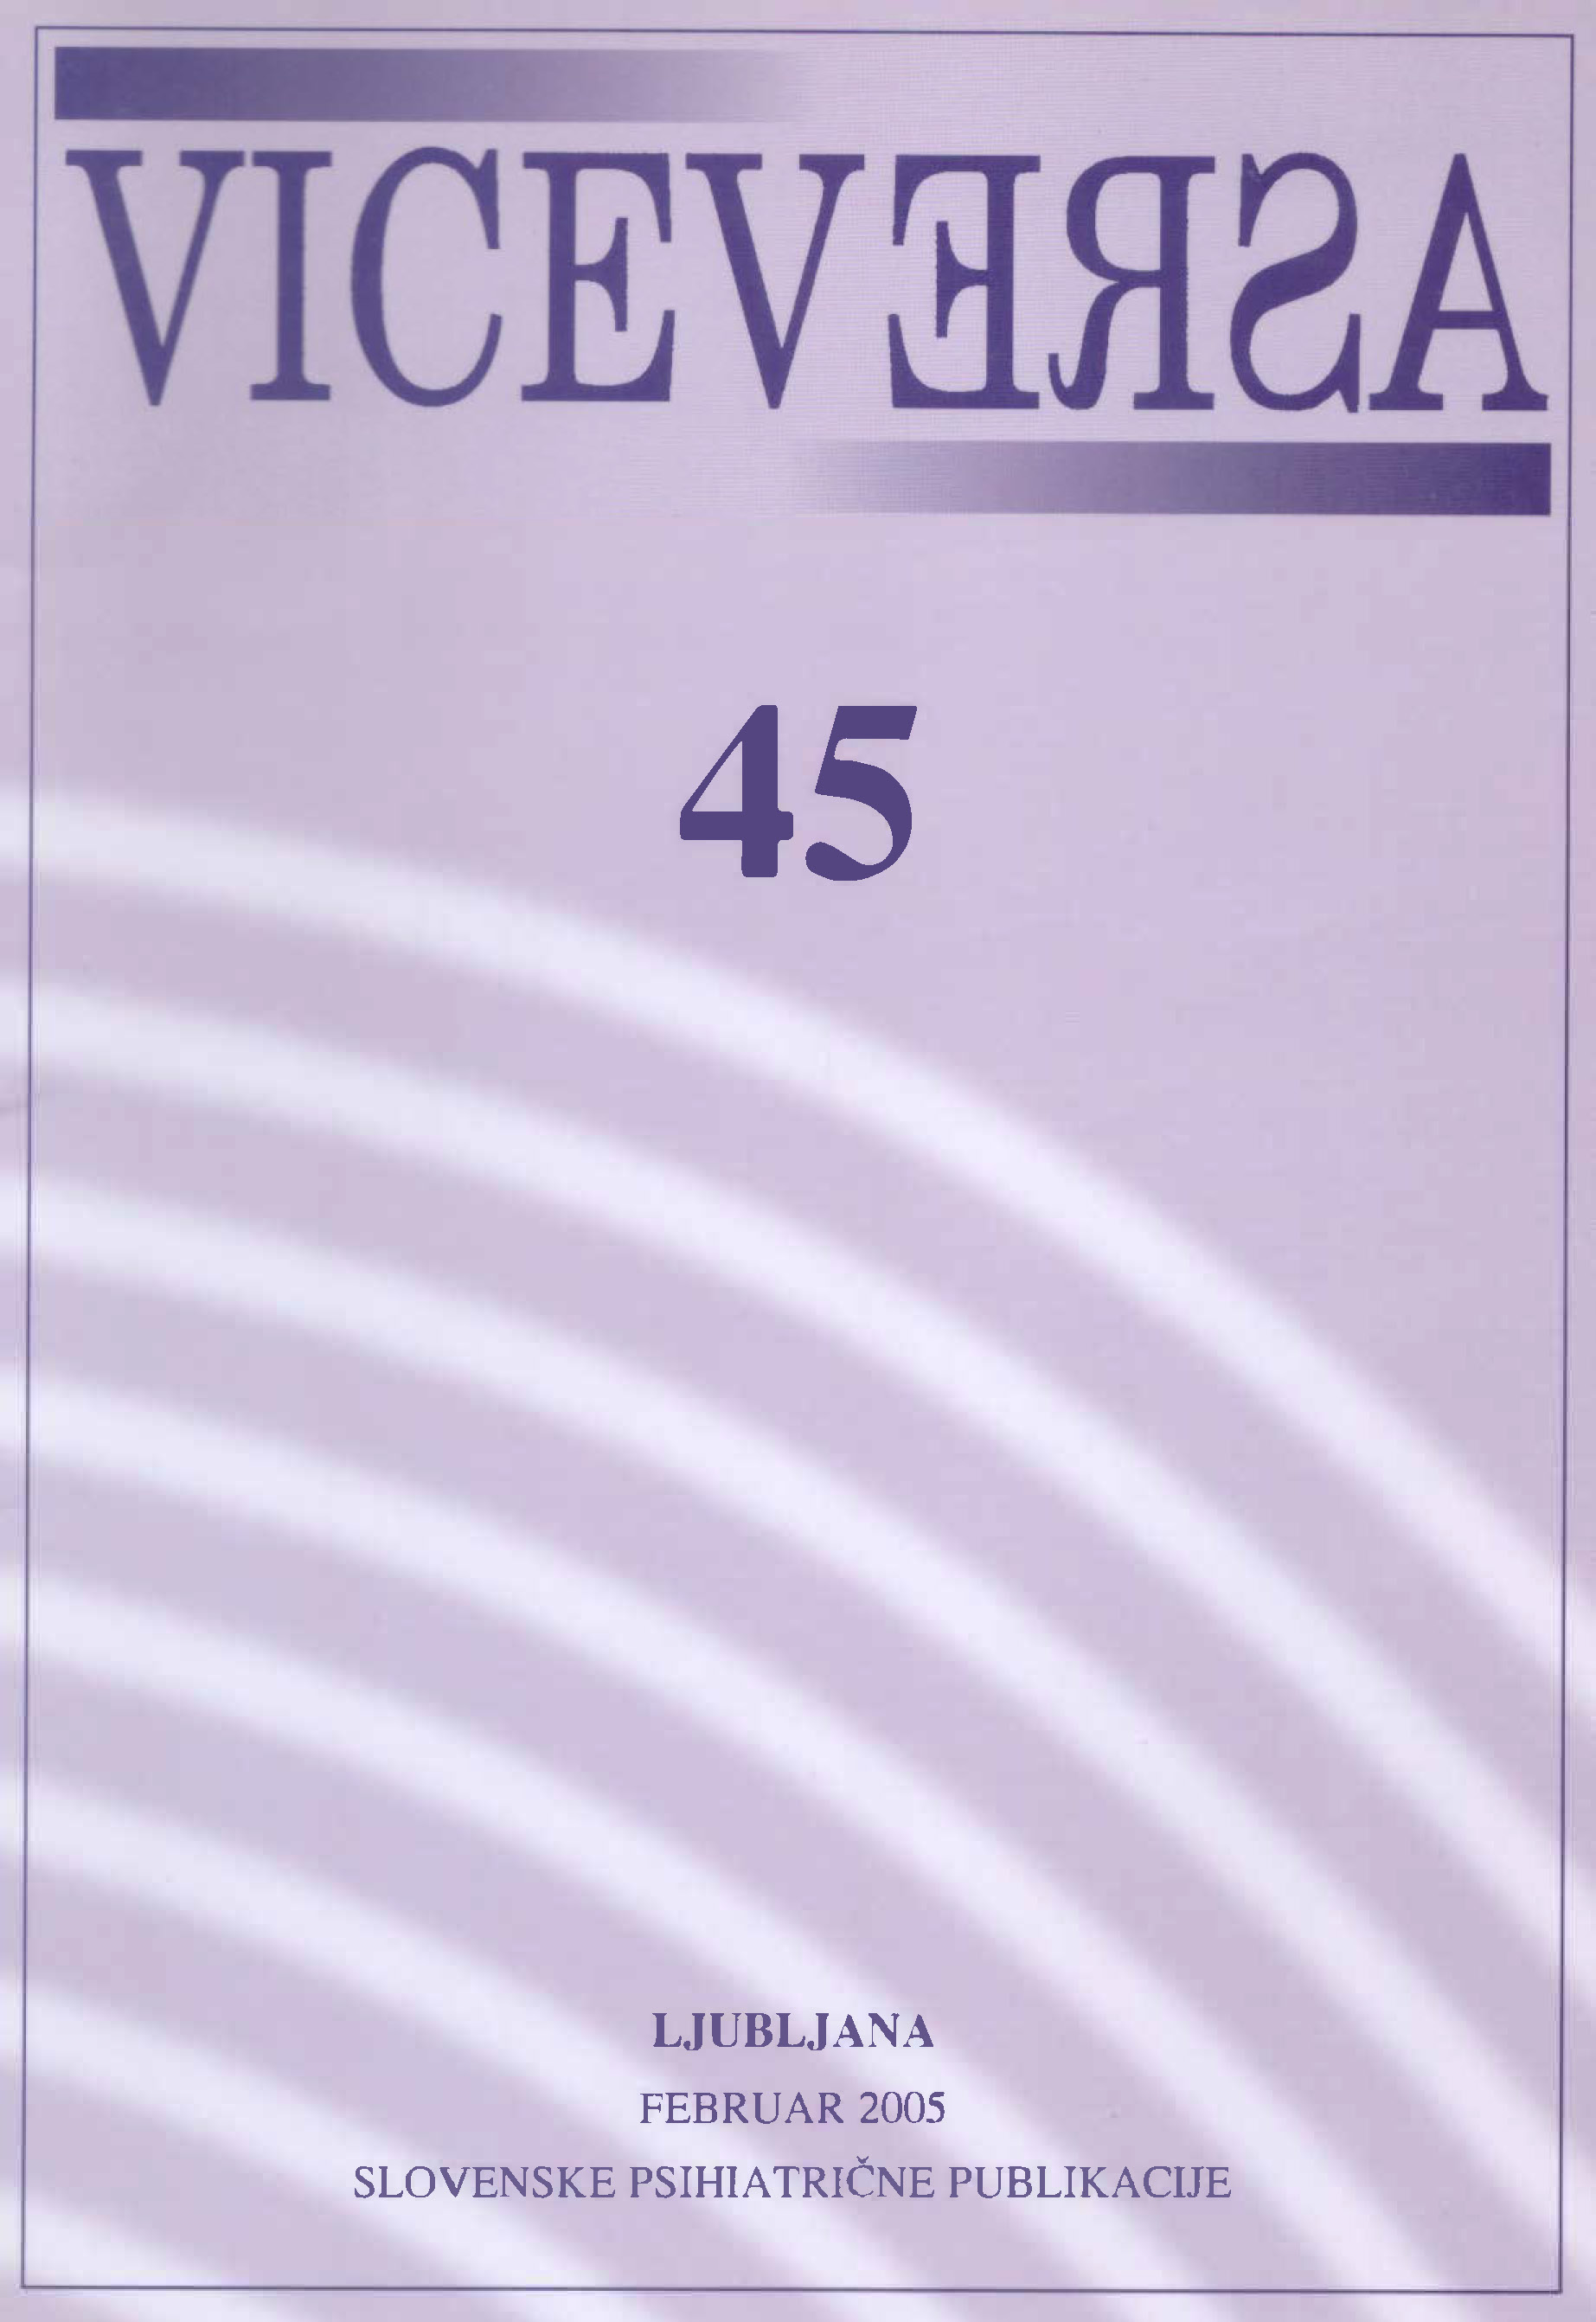 					Poglej Letn. 14 Št. 45 (2005): VICEVERSA
				